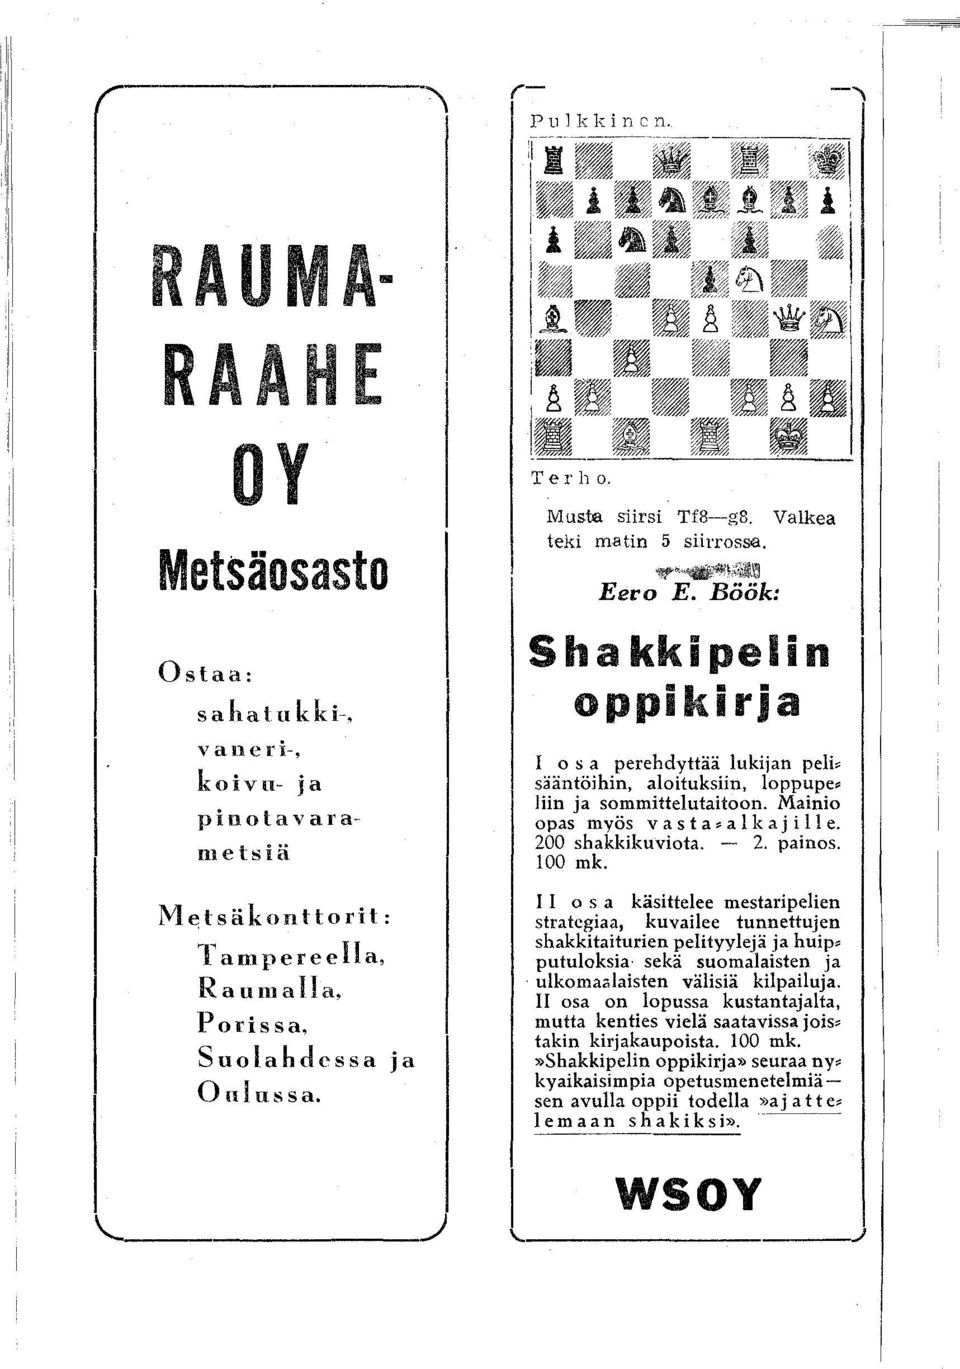 Mainio opas myös v a s t a ~ a l kaj i II e. 200 shakkikuviota. - 2. painos. 00 mk.